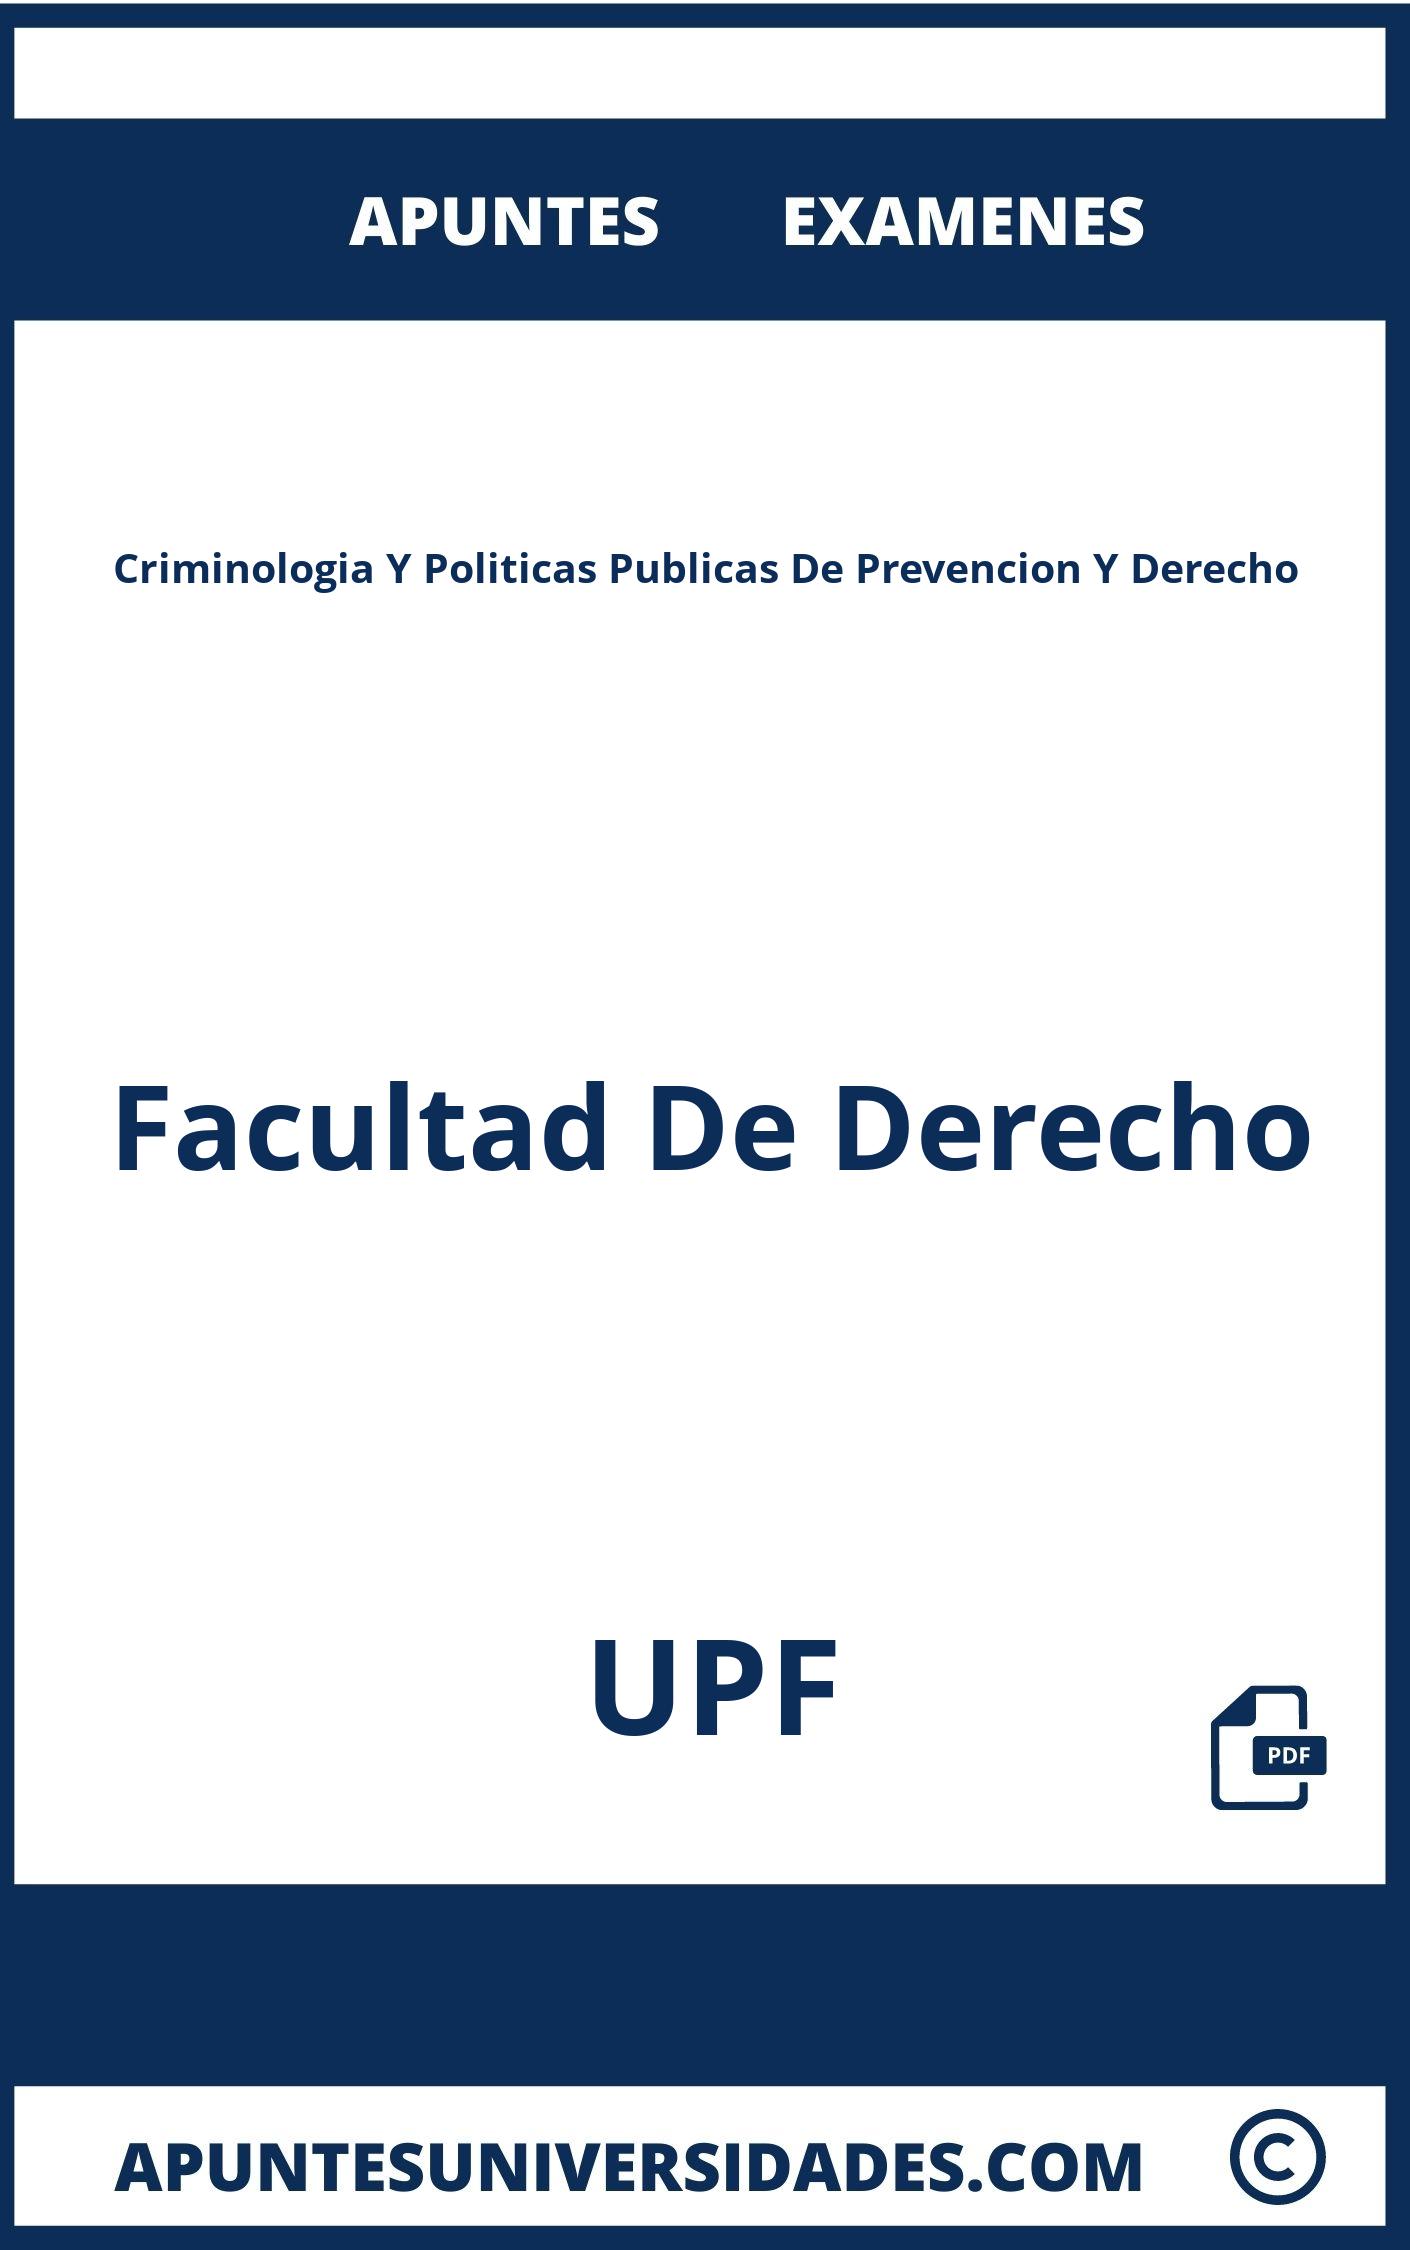 Apuntes y Examenes Criminologia Y Politicas Publicas De Prevencion Y Derecho UPF